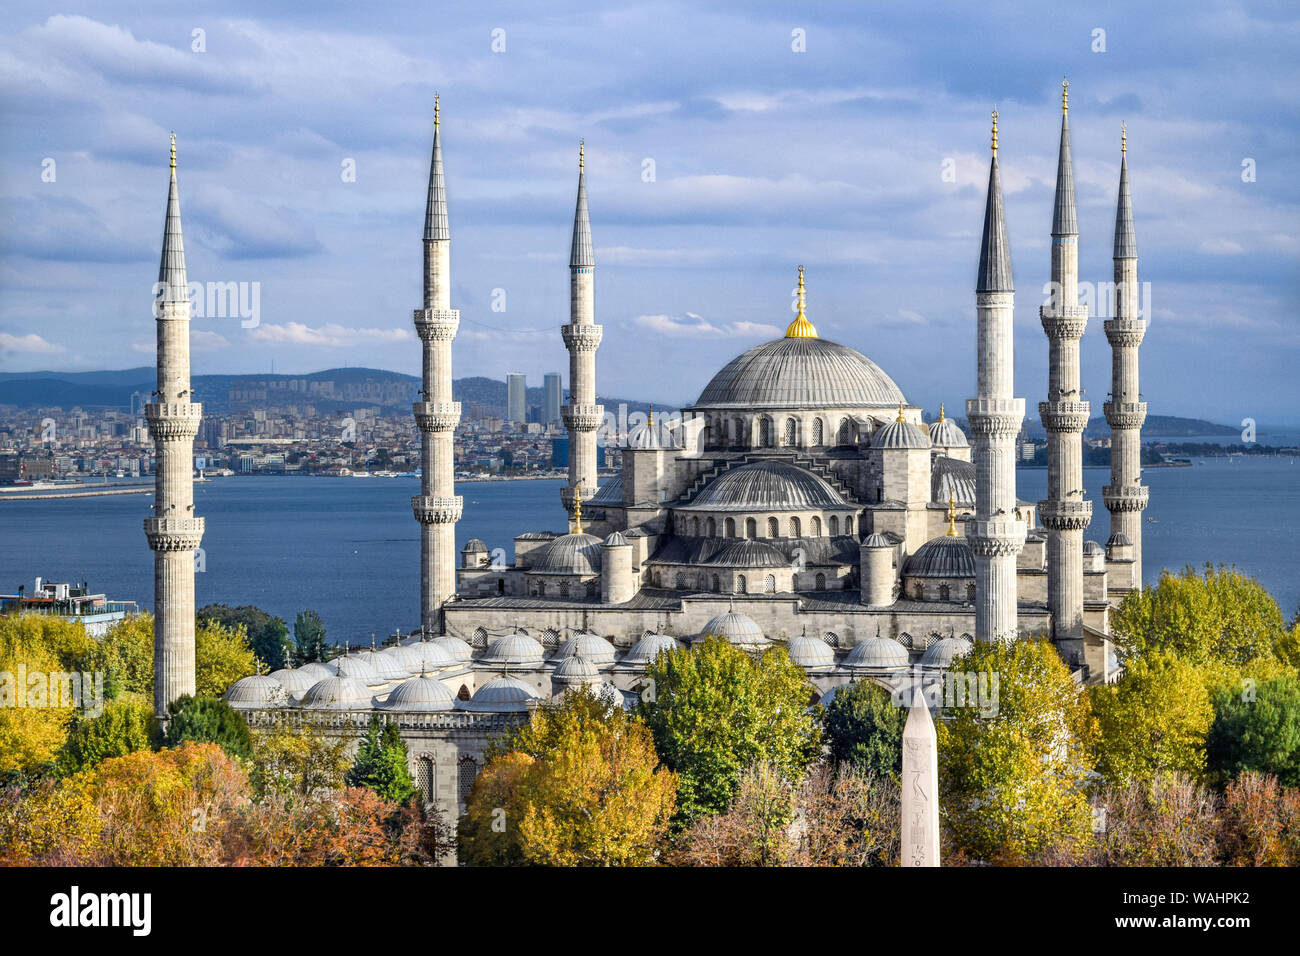 Vue aérienne de la Mosquée Bleue (Mosquée Sultan Ahmed) entourée d'arbres dans la vieille ville d'Istanbul - Sultanahmet, Istanbul, Turquie [automne/ Couleurs de l'automne] Banque D'Images